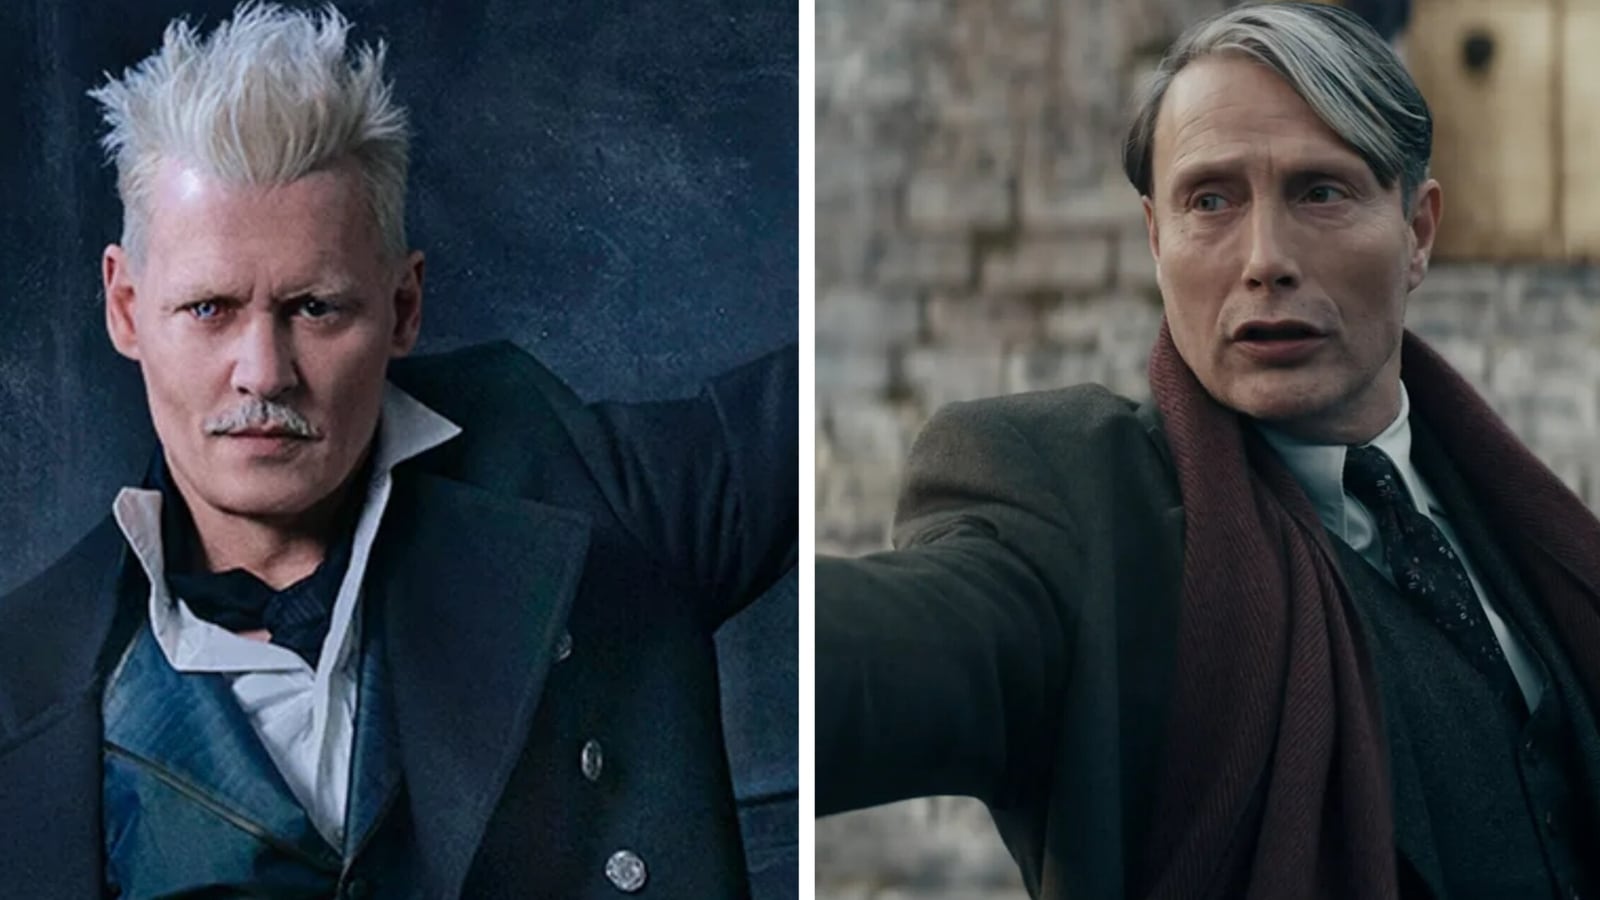 Johnny Depp might return to Fantastic Beasts, says Mads Mikkelsen ...